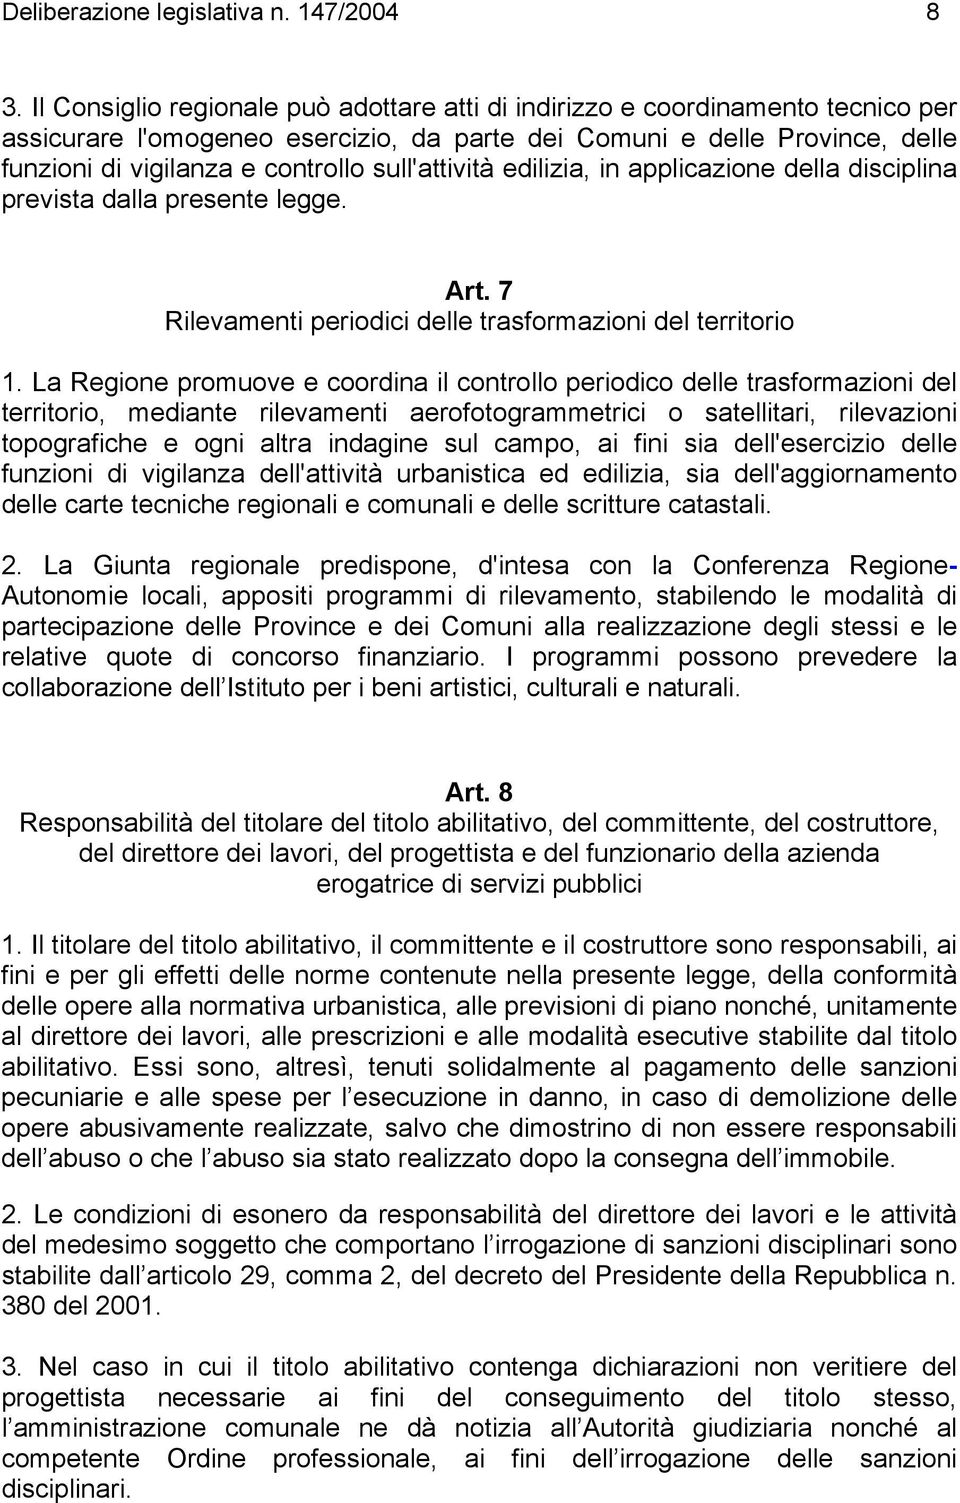 sull'attività edilizia, in applicazione della disciplina prevista dalla presente legge. Art. 7 Rilevamenti periodici delle trasformazioni del territorio 1.